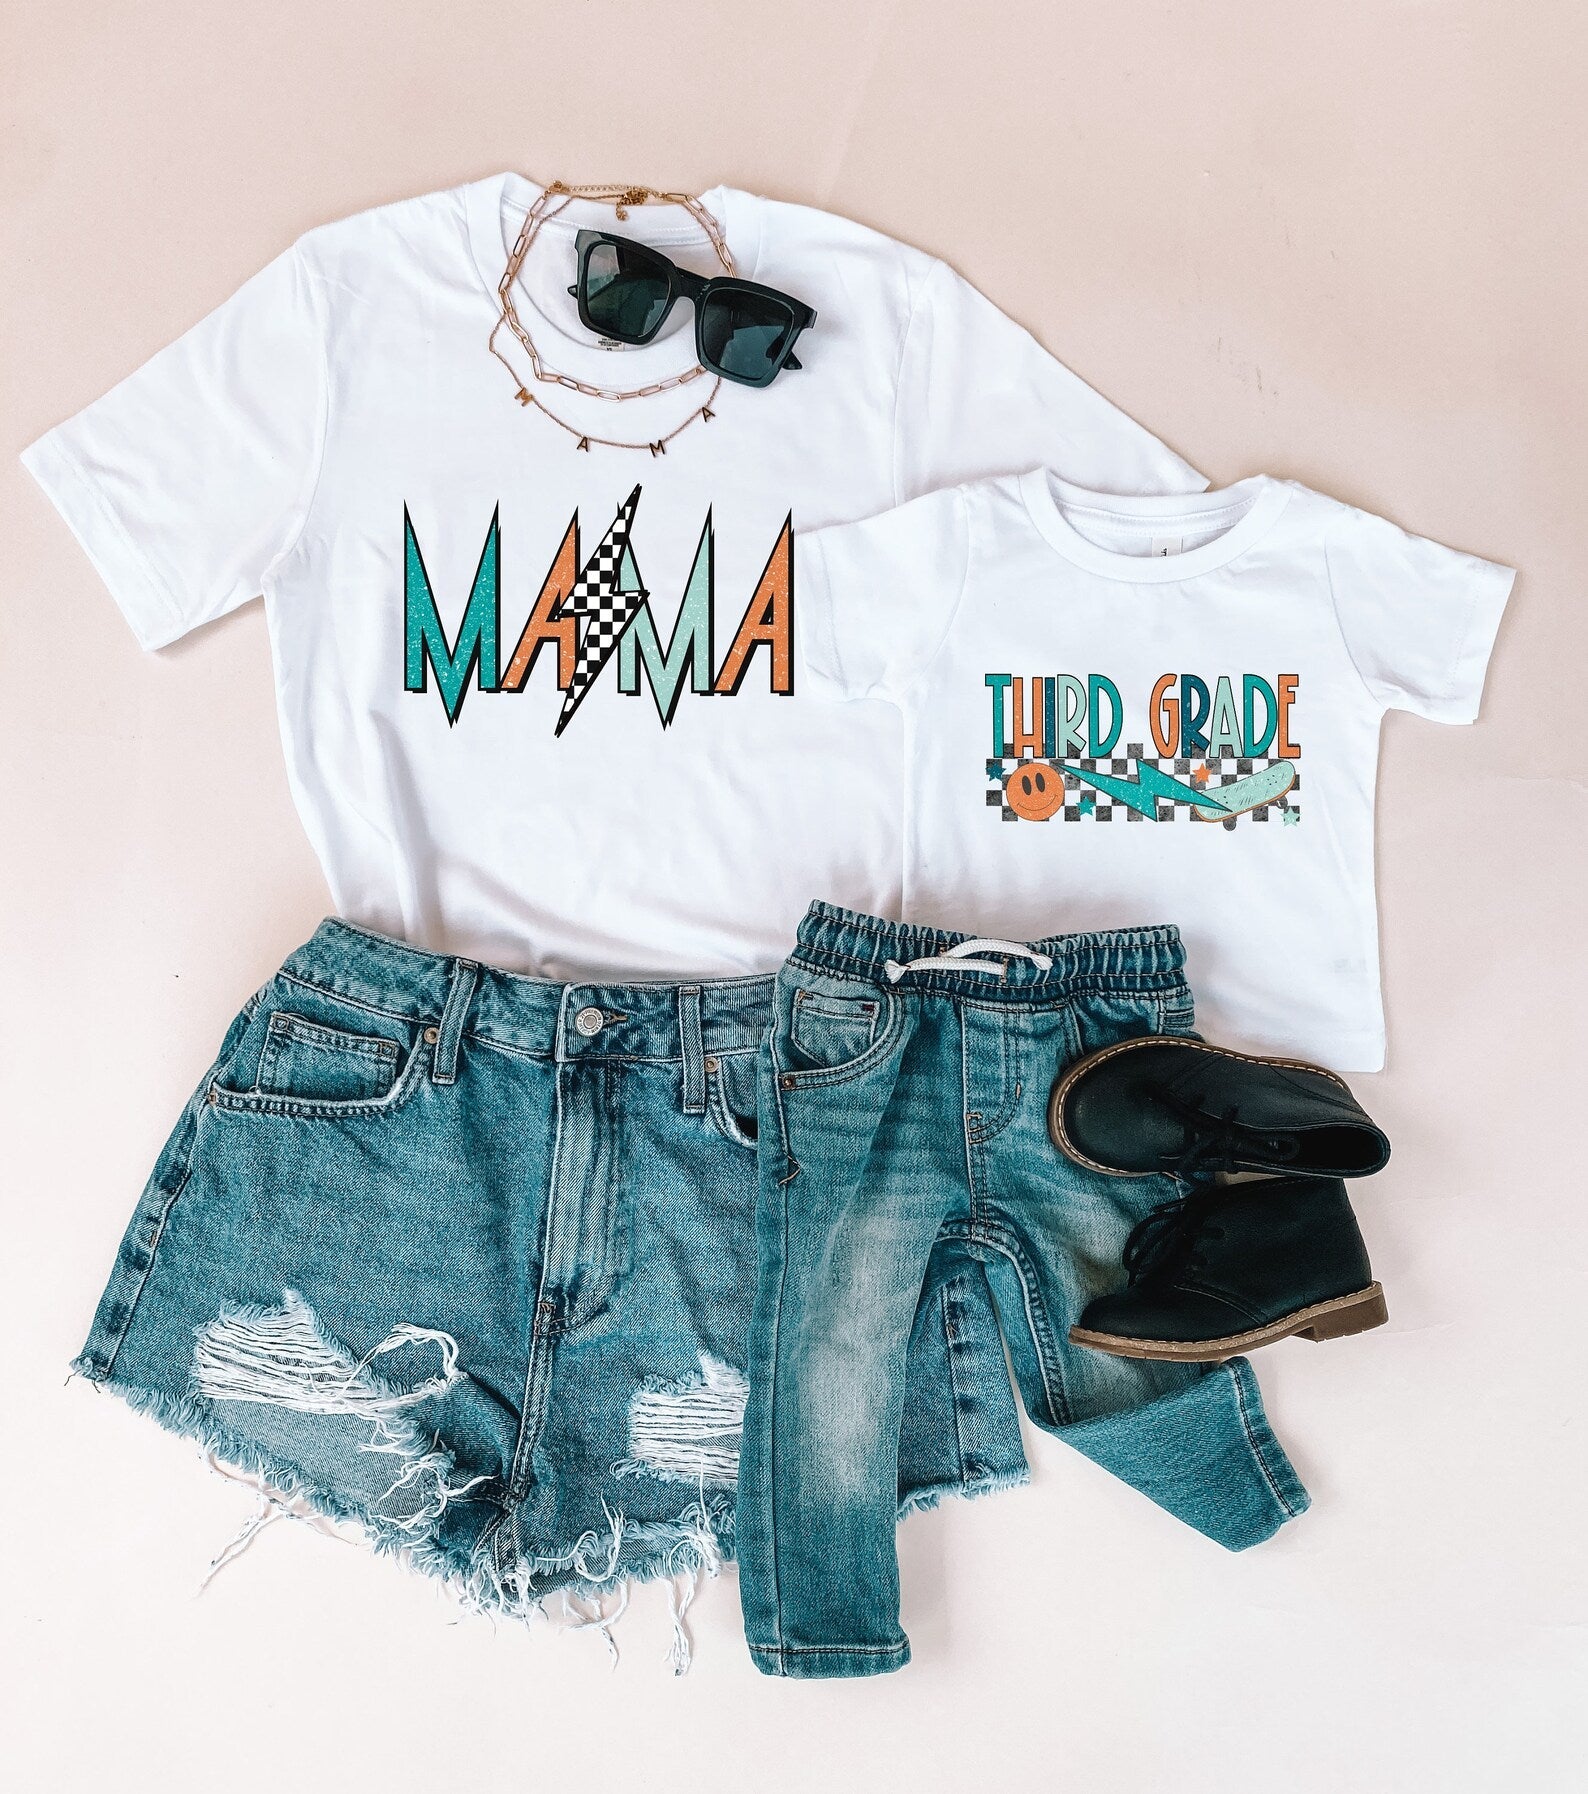 Third Grade Rocker Boy Mama Shirts Matching Shirts - LITTLE MIA BELLA